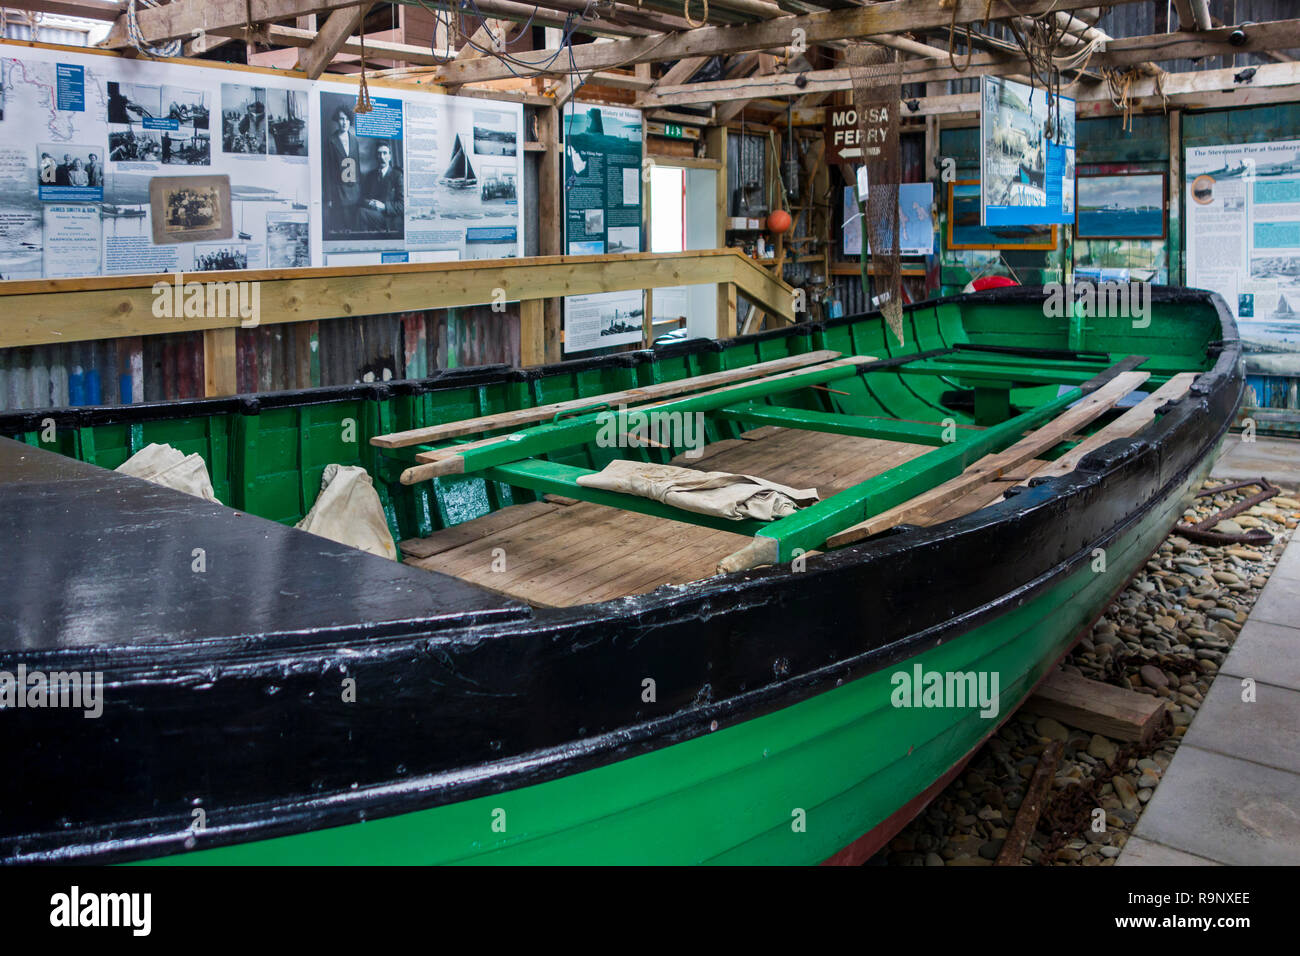 Die wiederhergestellten Mousa flitboat/huschen Boot im Sandsayre interpretativen Zentrum bei Sandwick, Shetlandinseln, Schottland, Großbritannien Stockfoto